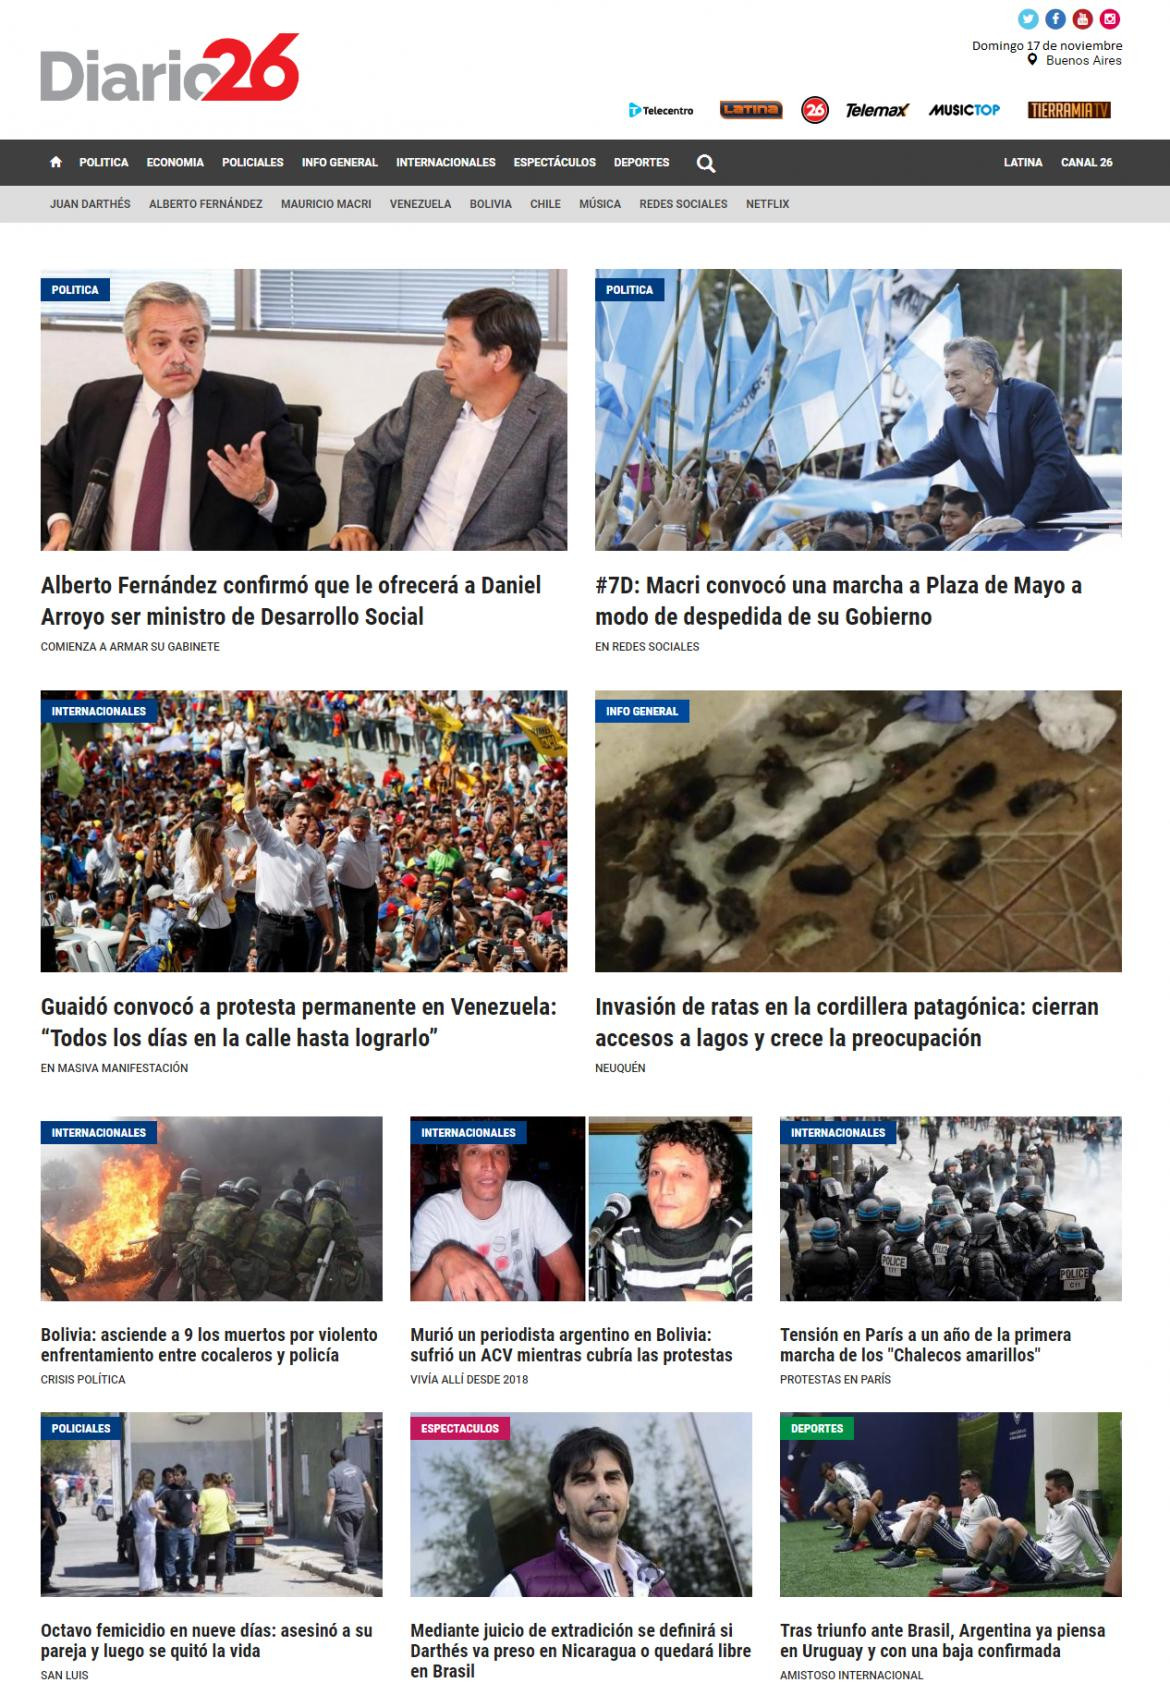 Tapas de diarios, Diario 26, domingo 17 de noviembre de 2019